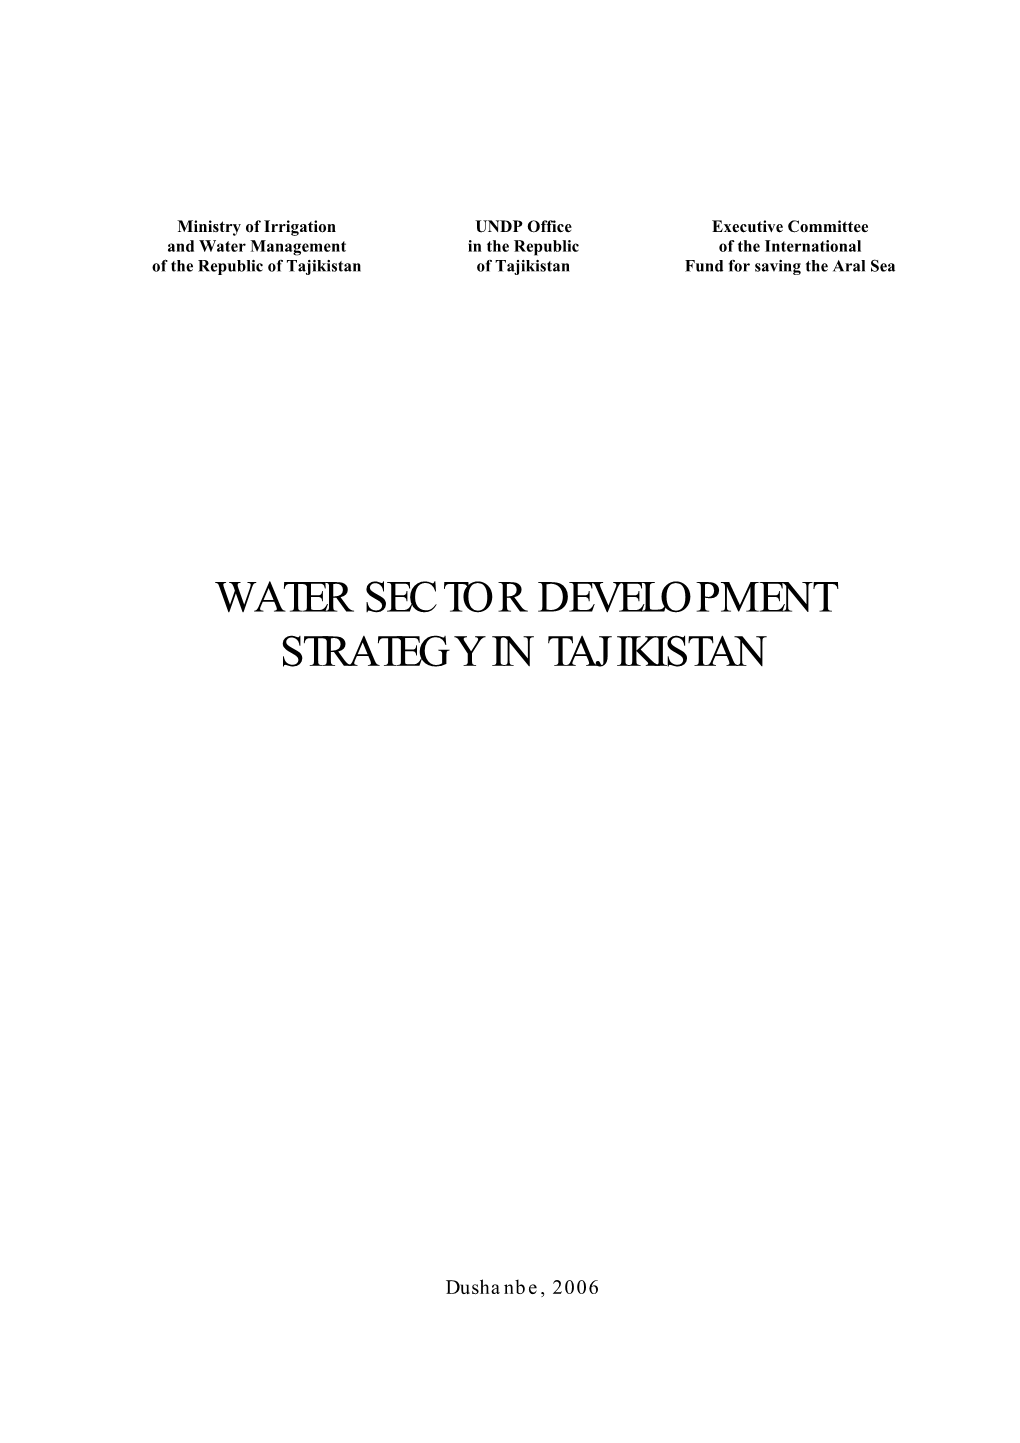 Water Sector Development Strategy in Tajikistan